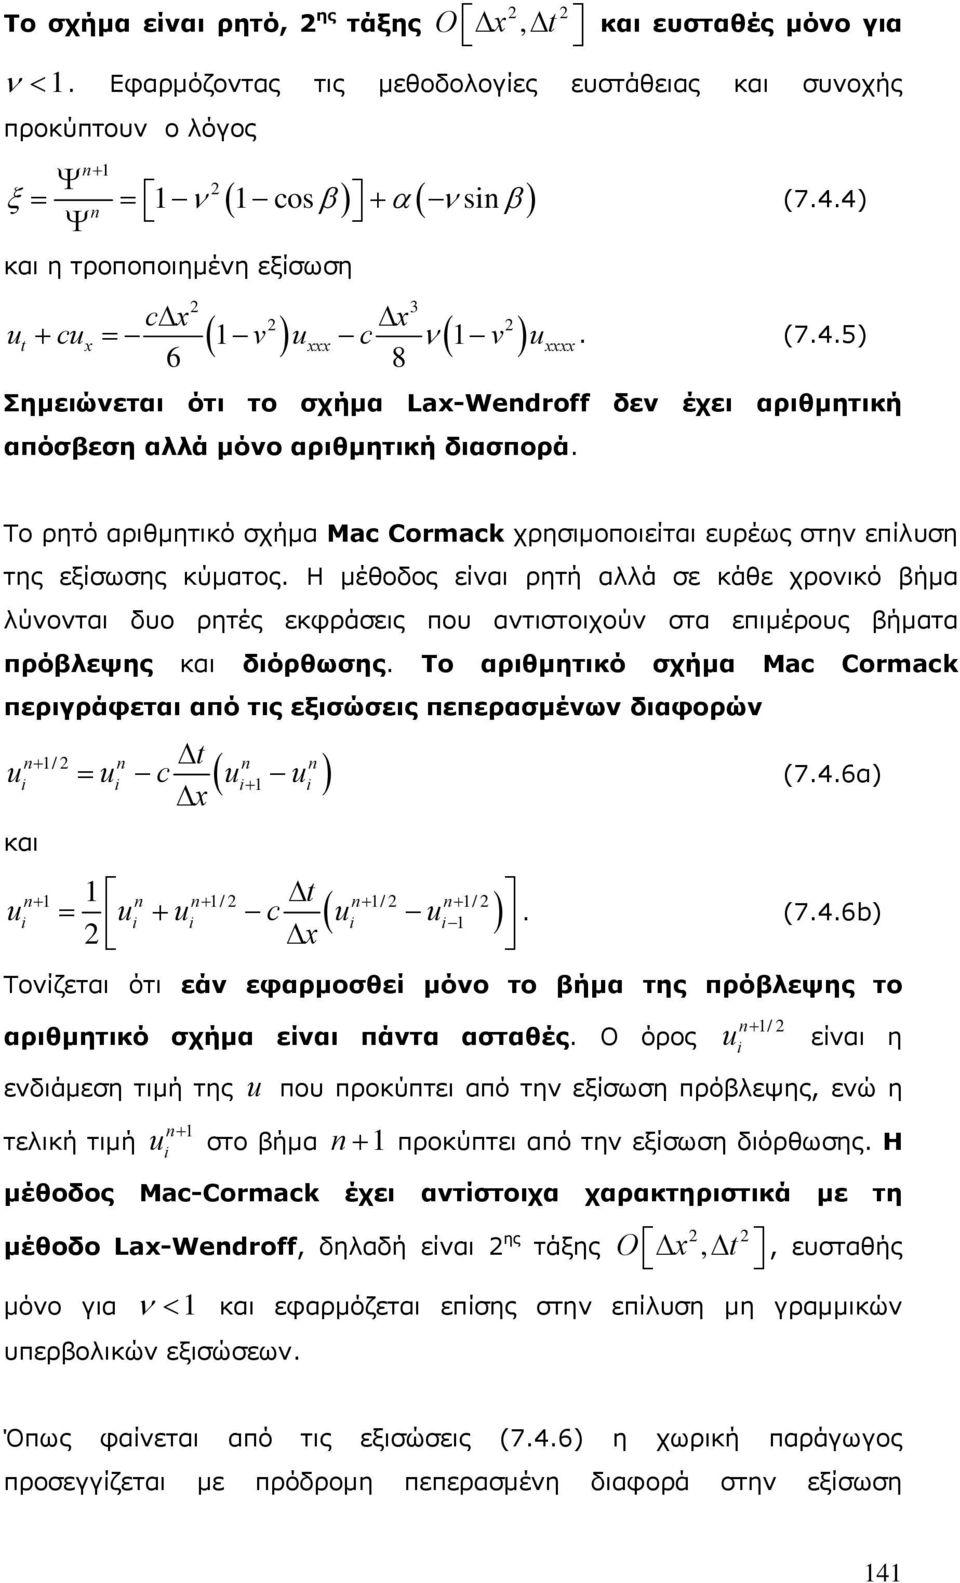 Το ρητό αριθμητικό σχήμα Mac Cormack χρησιμοποιείται ευρέως στην επίλυση της εξίσωσης κύματος.